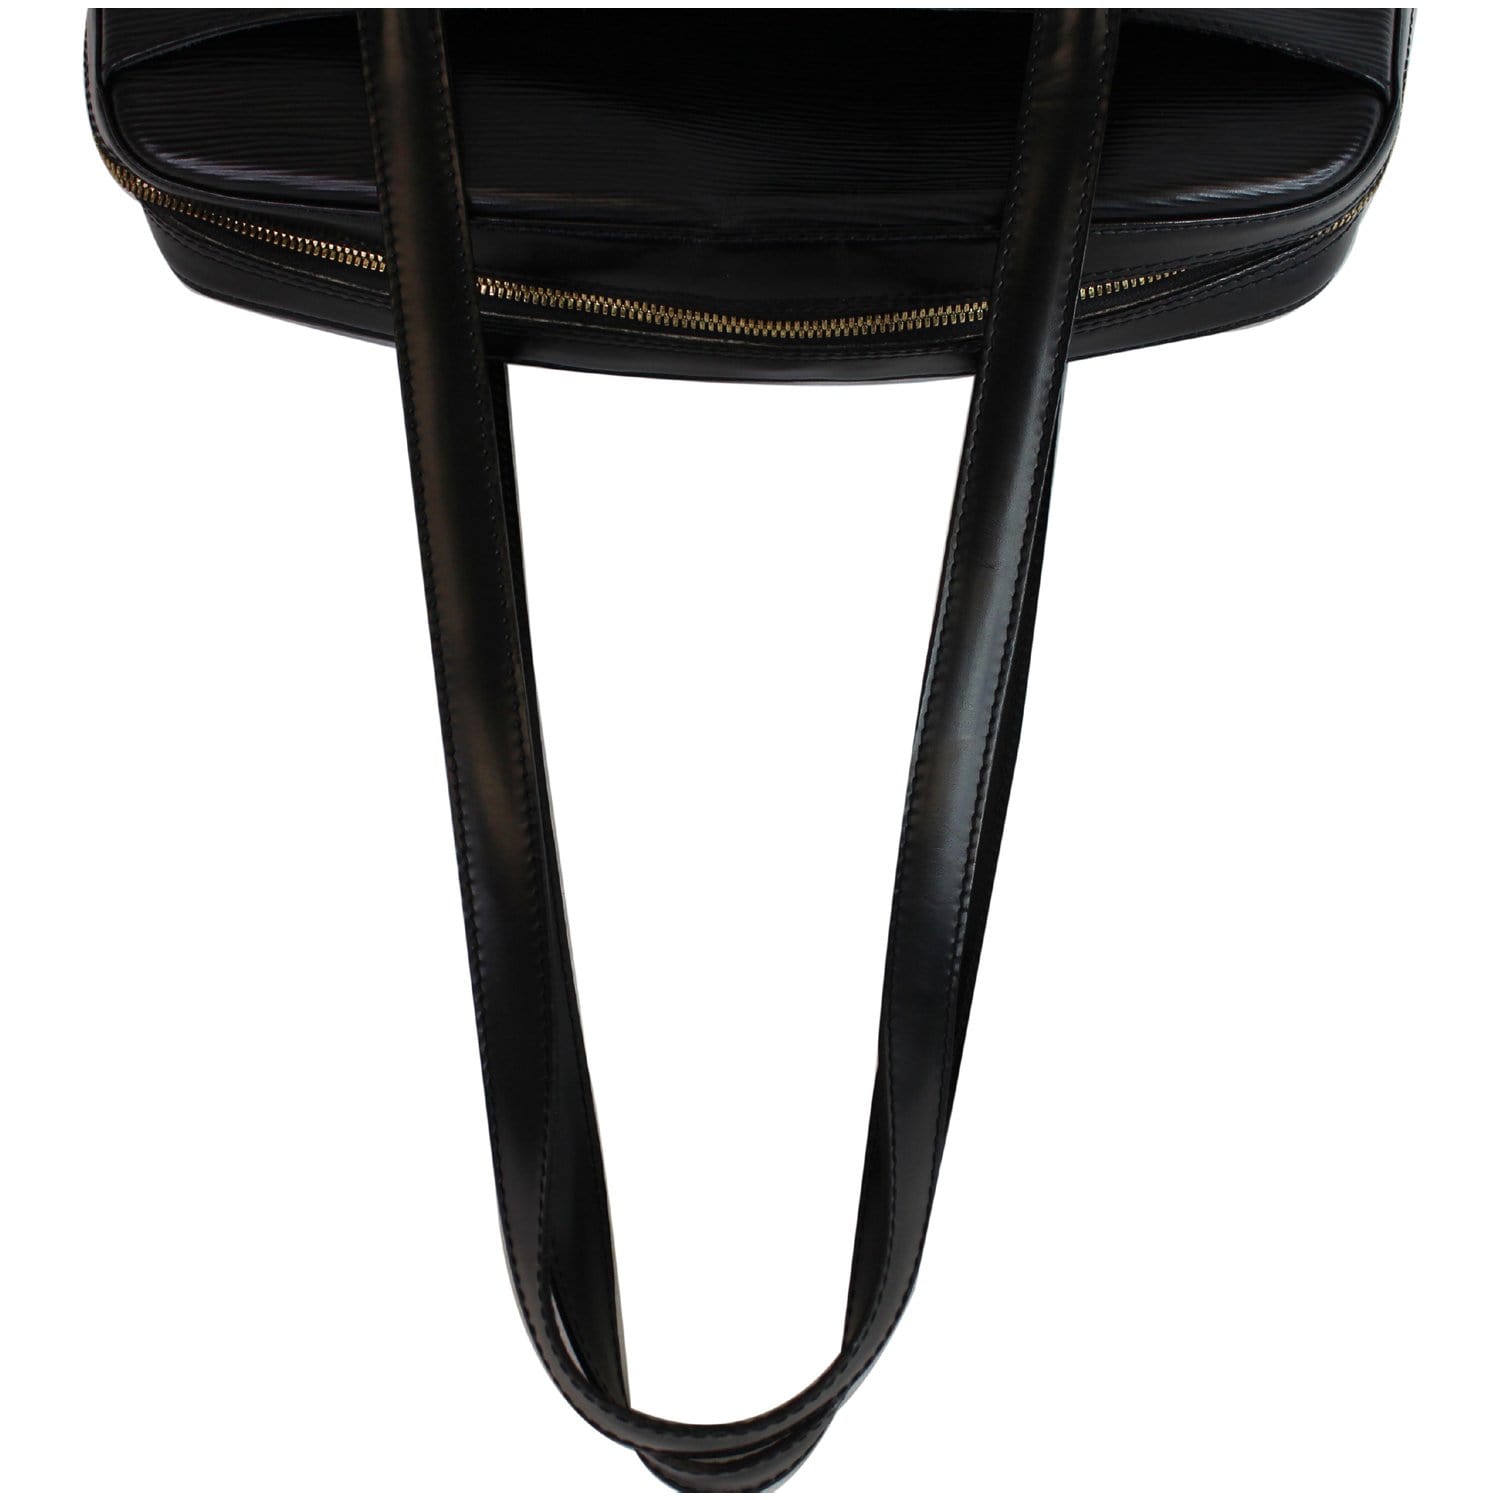 LOUIS VUITTON LV Voltaire Shoulder Bag Epi Leather Black Gold M52432  35YB641